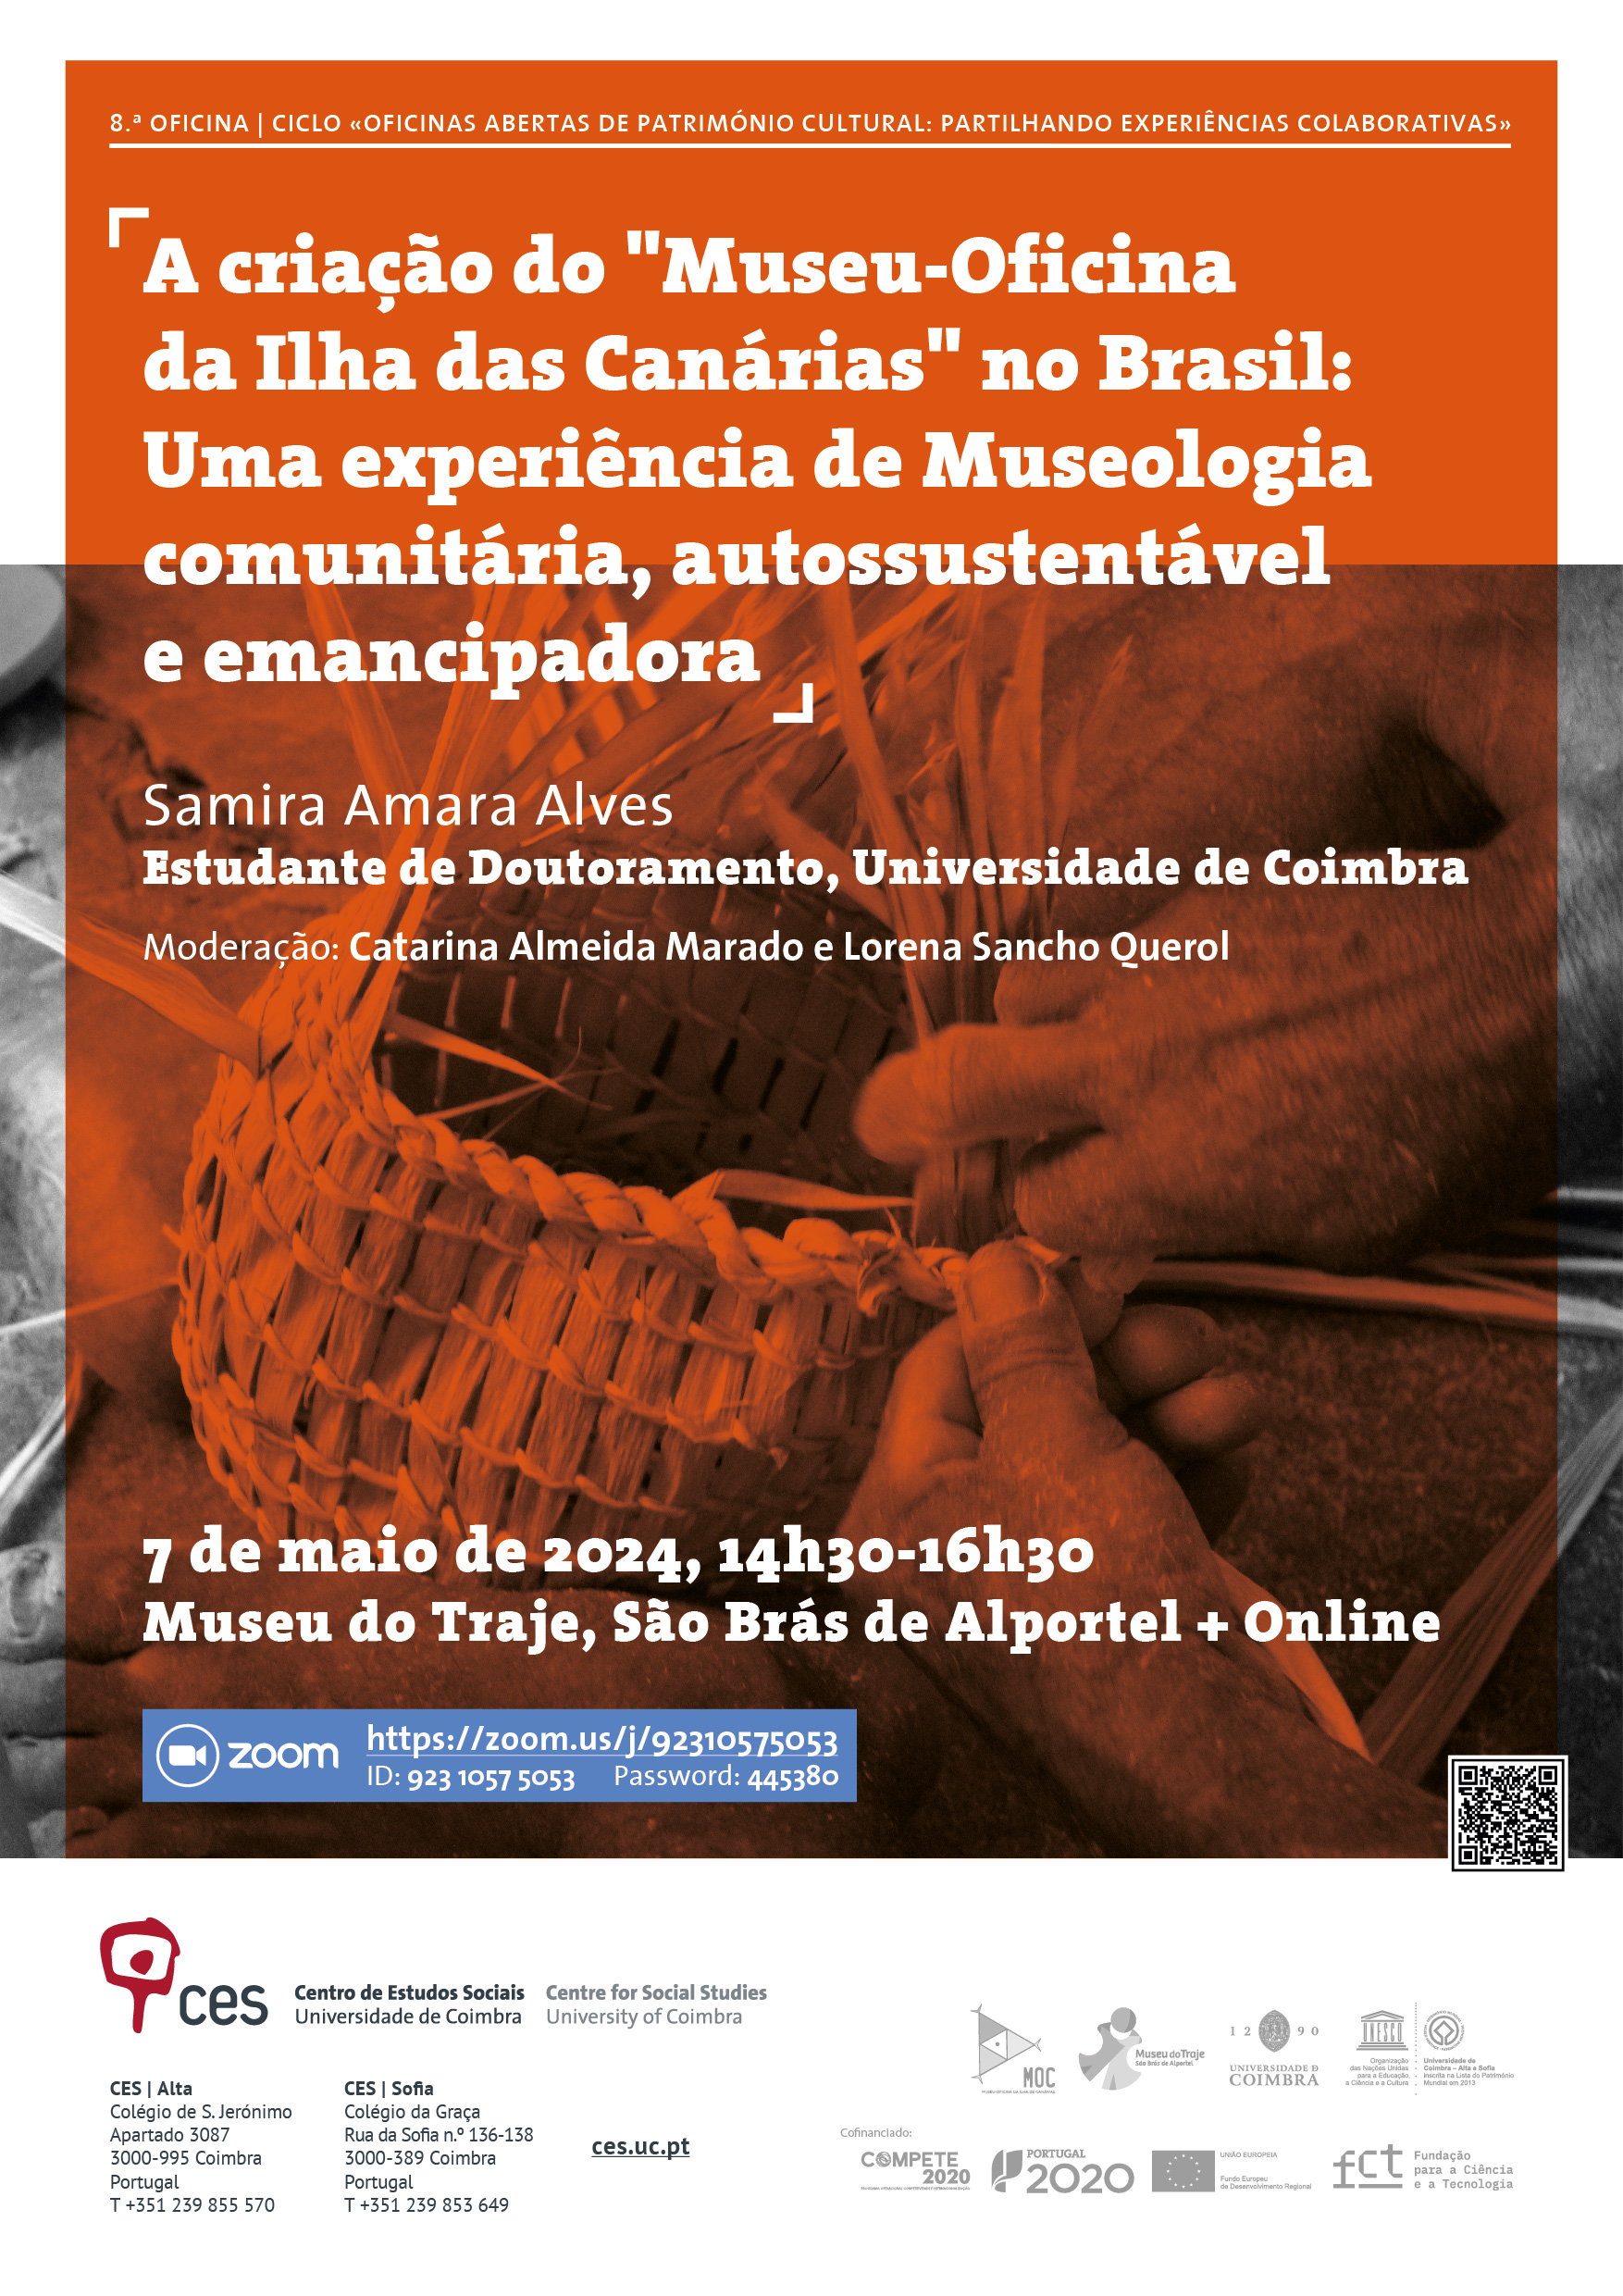 8.ª OFICINA | A criação do "Museu-Oficina da Ilha das Canárias" no Brasil: Uma experiência de Museologia comunitária, autossustentável e emancipadora<span id="edit_45640"><script>$(function() { $('#edit_45640').load( "/myces/user/editobj.php?tipo=evento&id=45640" ); });</script></span>